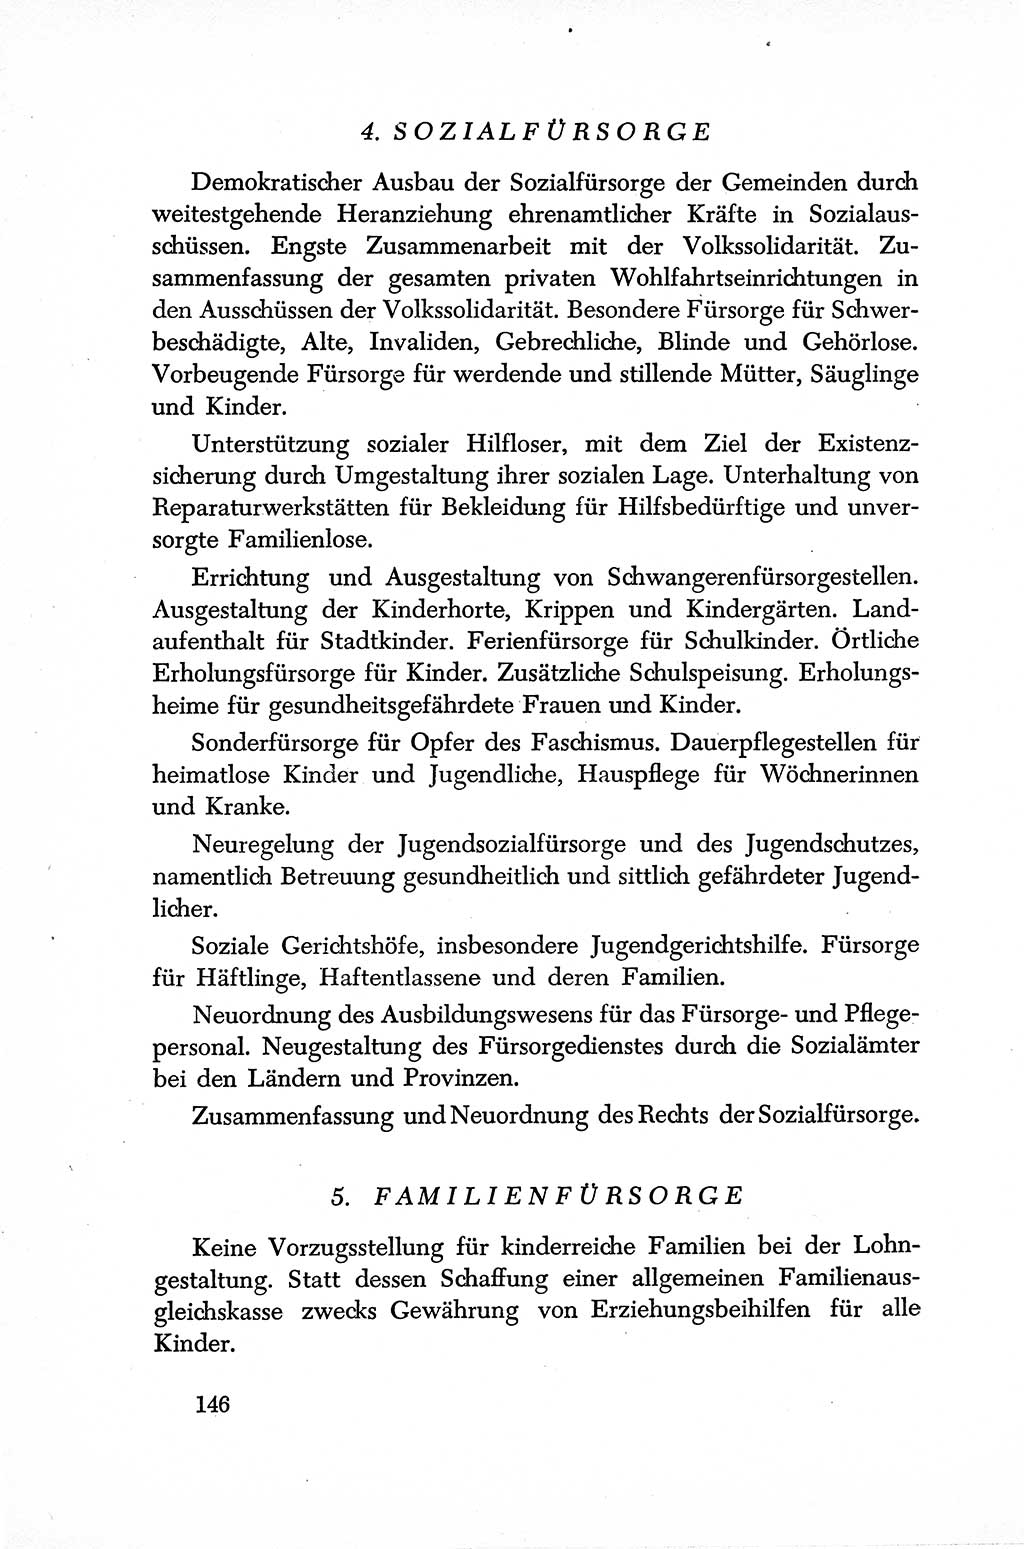 Dokumente der Sozialistischen Einheitspartei Deutschlands (SED) [Sowjetische Besatzungszone (SBZ) Deutschlands] 1946-1948, Seite 146 (Dok. SED SBZ Dtl. 1946-1948, S. 146)